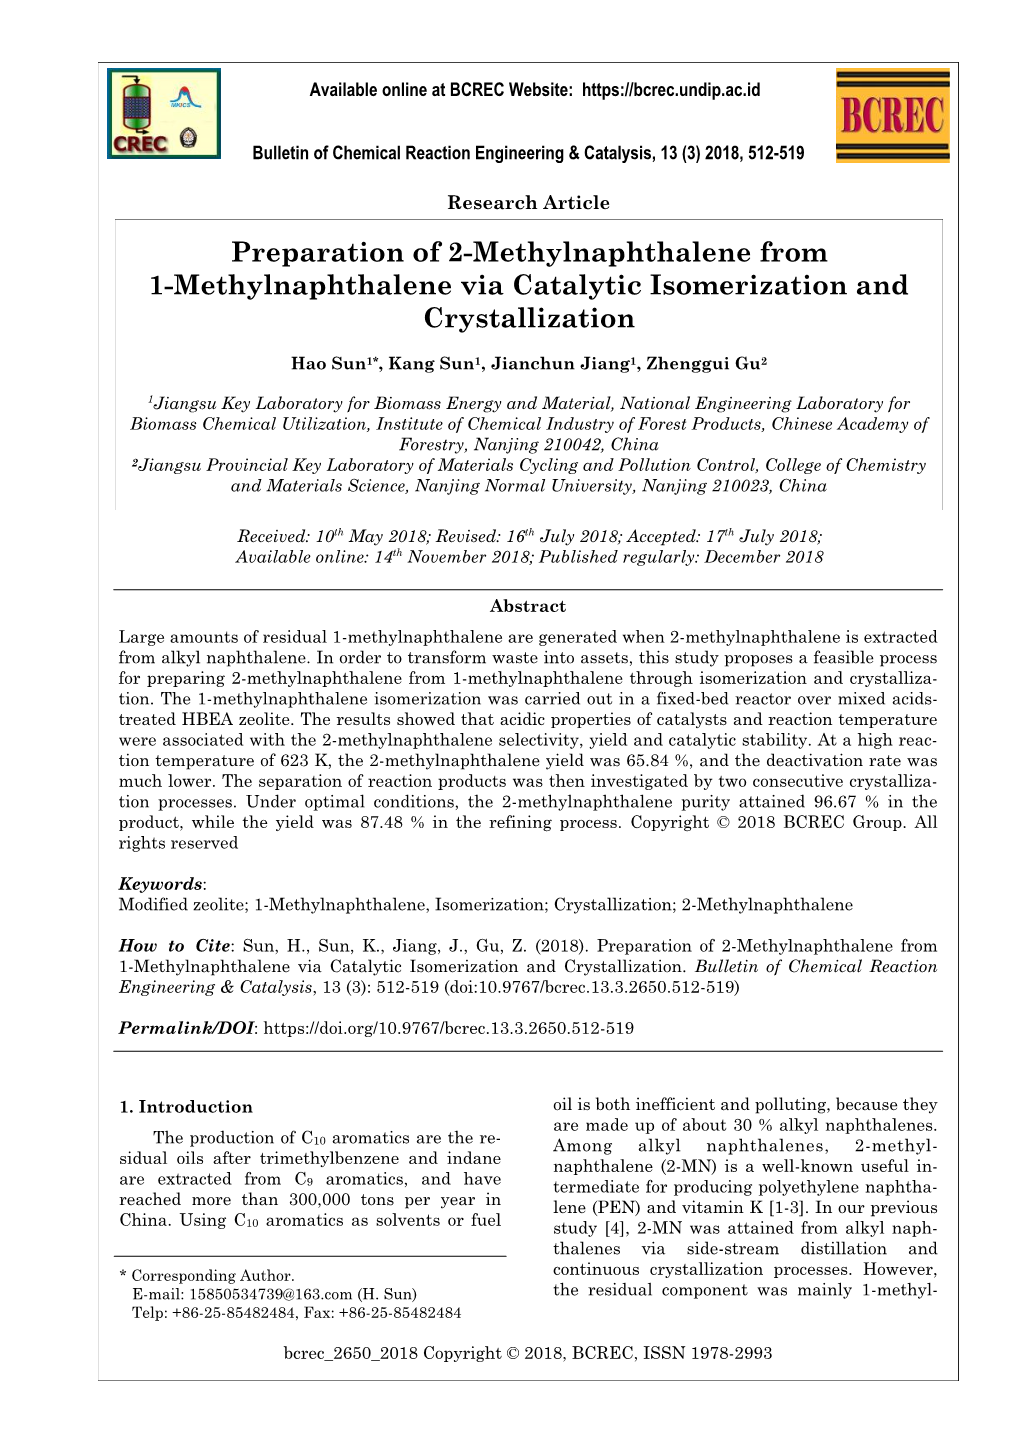 Preparation of 2-Methylnaphthalene from 1-Methylnaphthalene Via Catalytic Isomerization and Crystallization